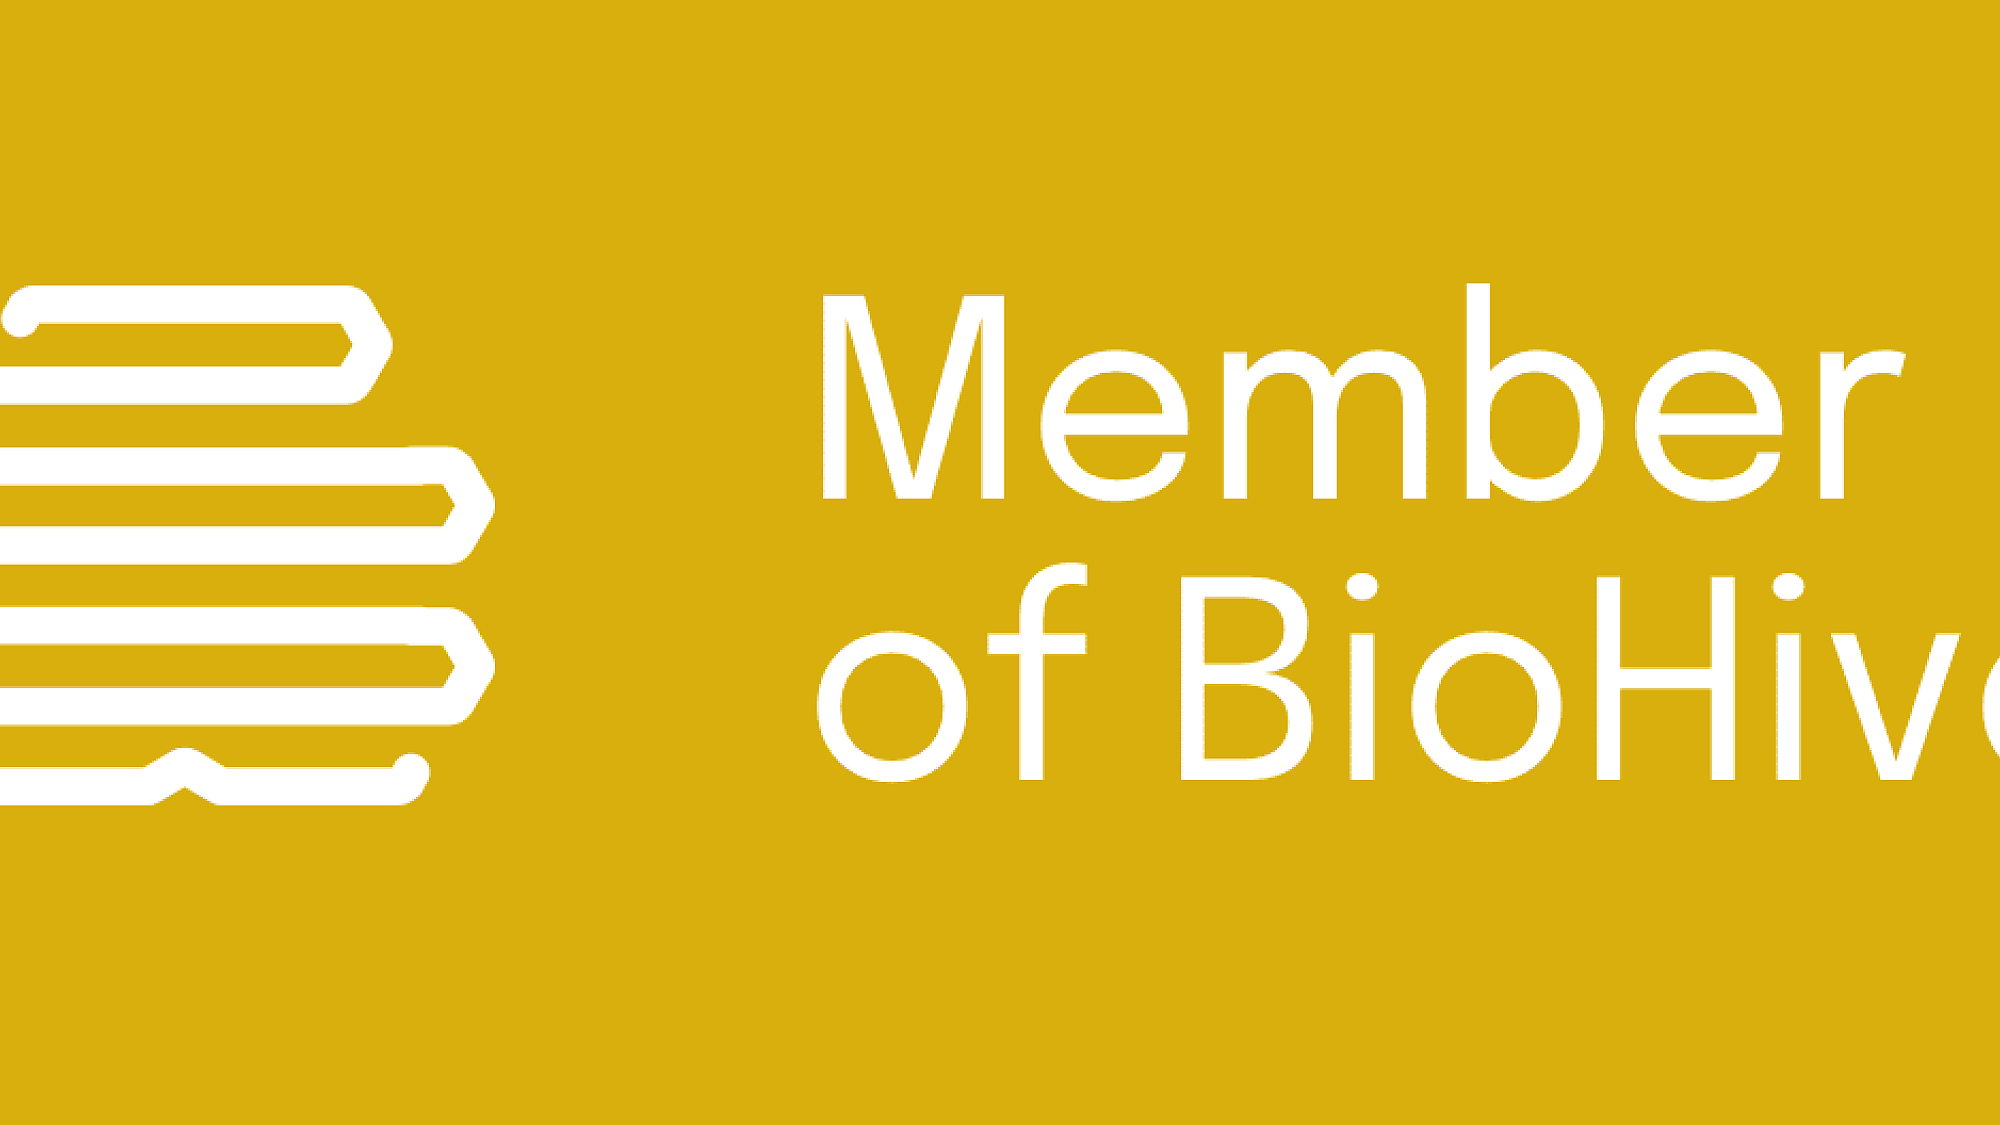 biohive-member-card-yellow